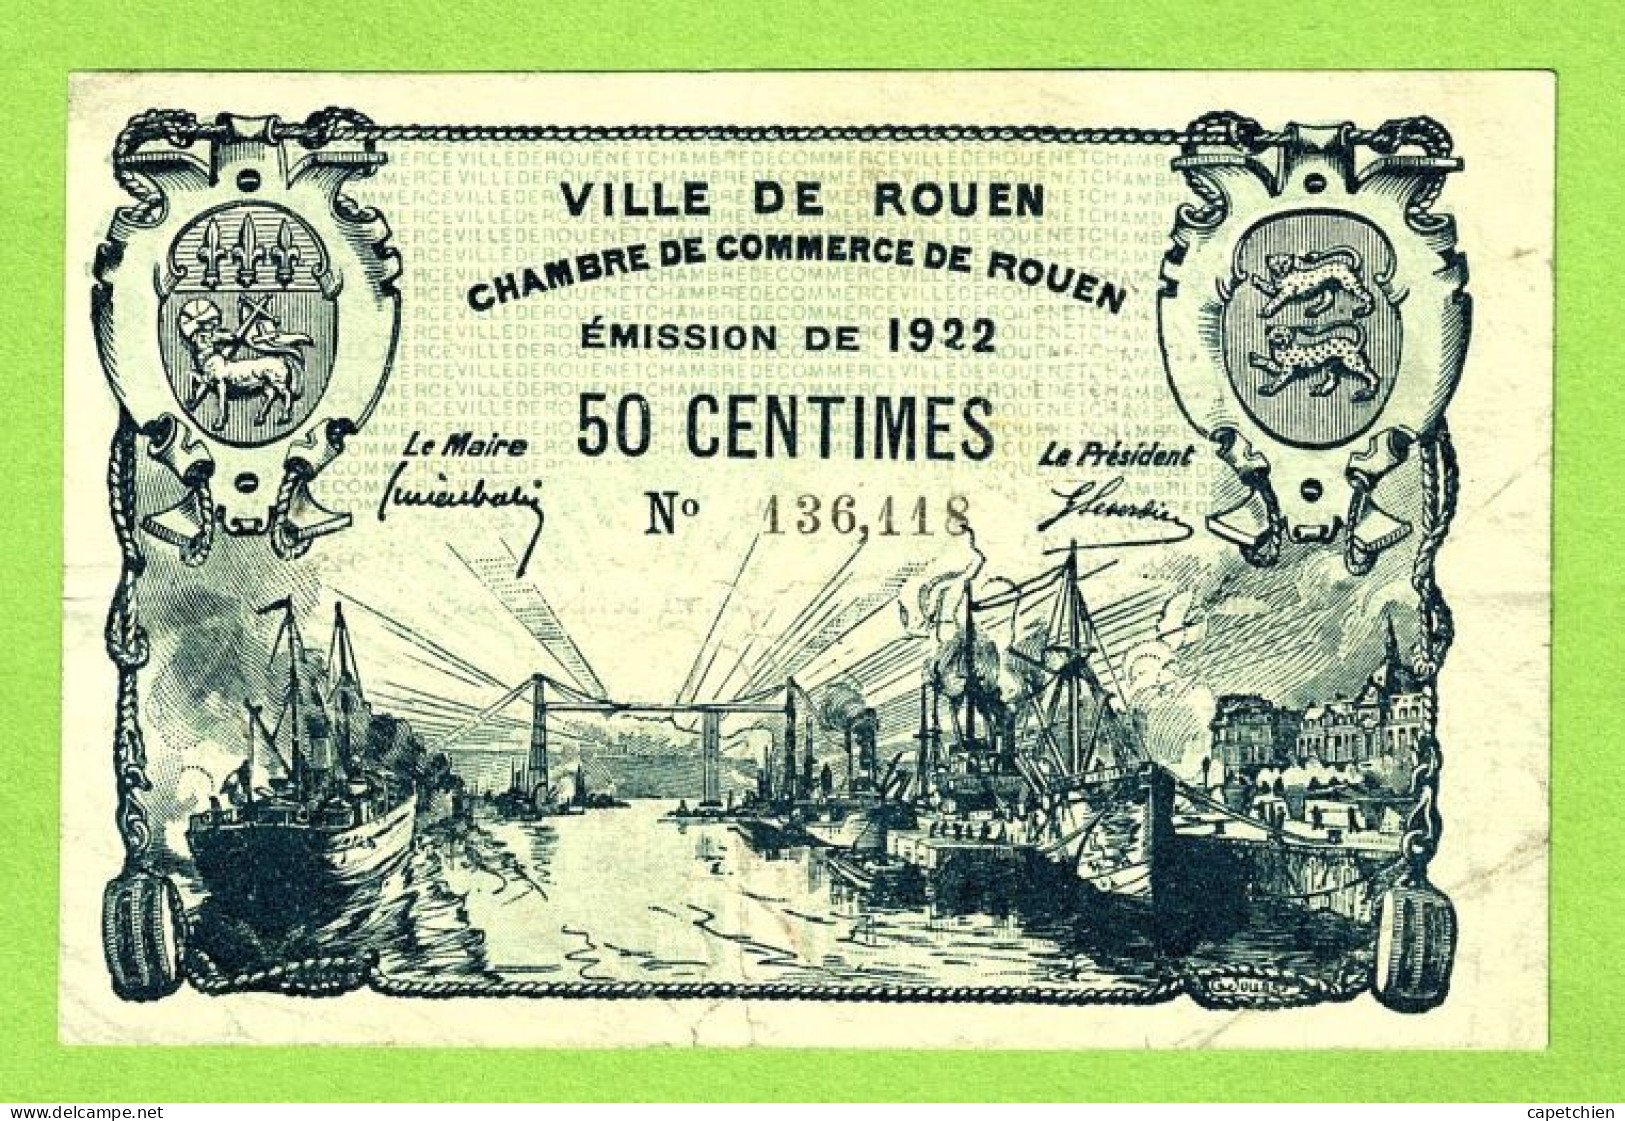 FRANCE / VILLE & CHAMBRE De COMMERCE De ROUEN / 50 CENTIMES  / EMISSION DE 1922 /  / N° 136611 - Cámara De Comercio